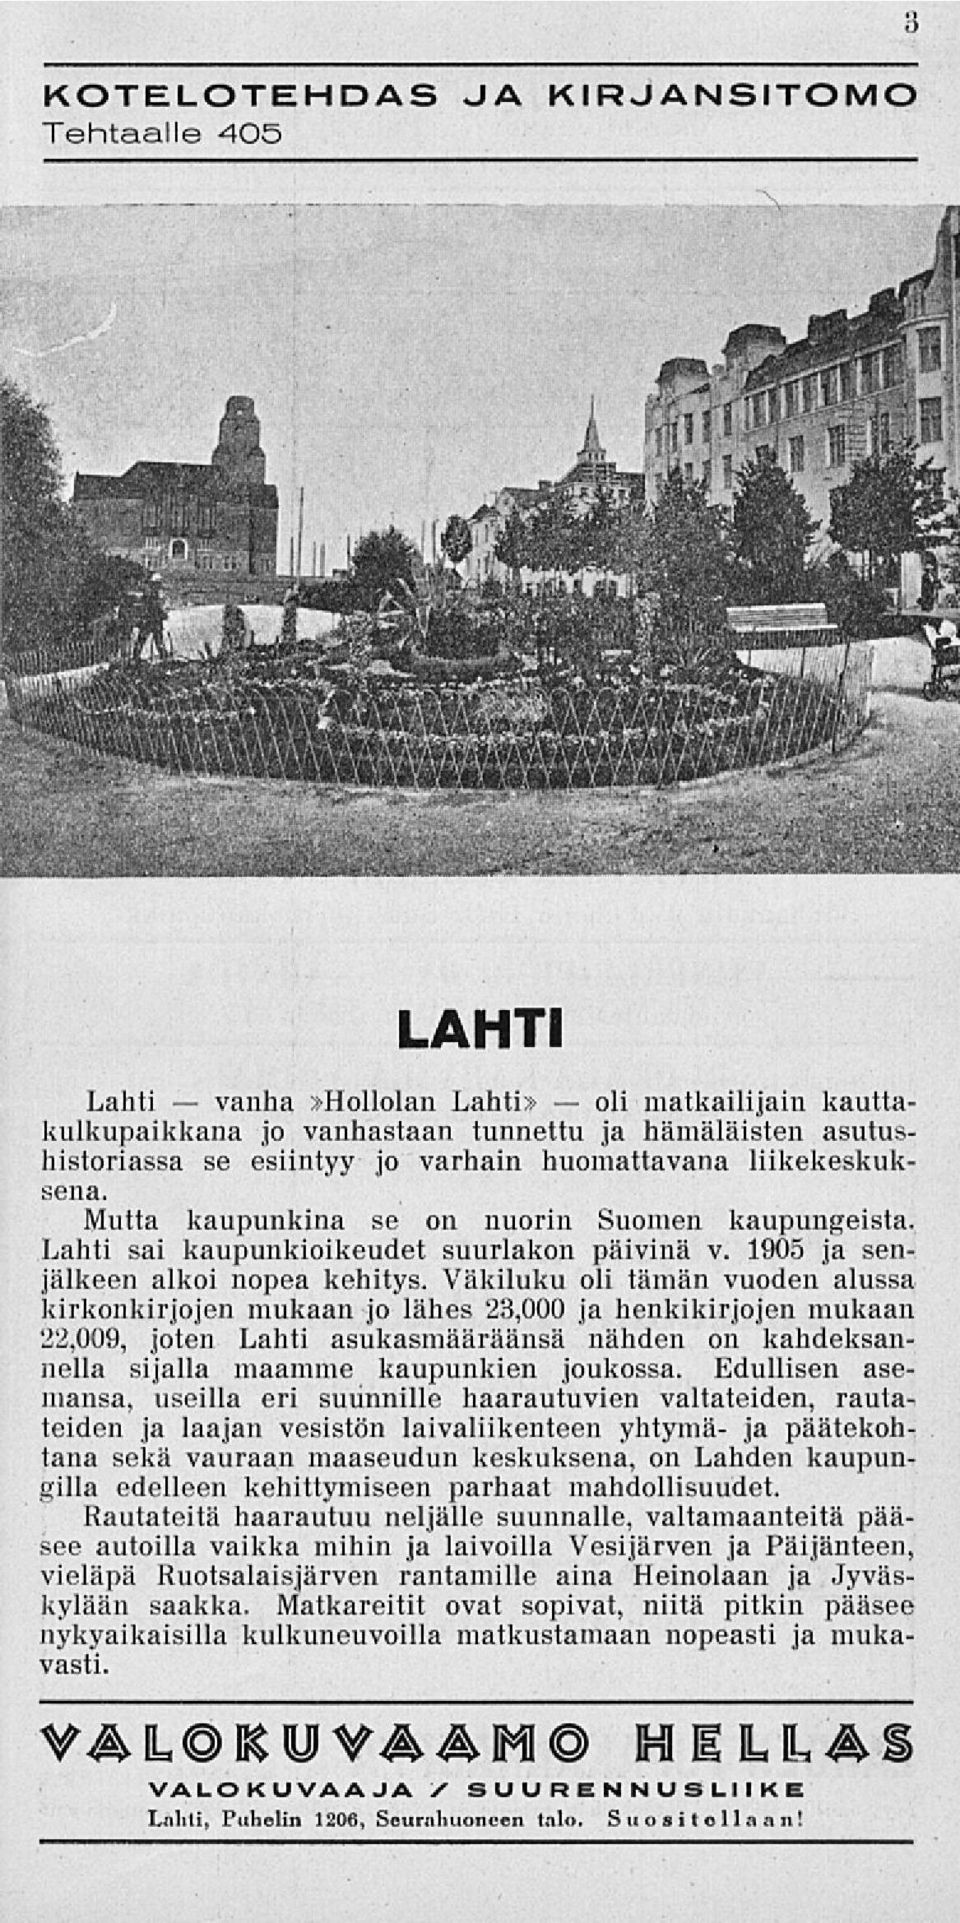 Väkiluku oli tämän vuoden alussa kirkonkirjojen mukaan jo lähes 23,000 ja henkikirjojen mukaan '22,009, joten Lahti asukasmääräänsä nähden on kahdeksannella sijalla maamme kaupunkien joukossa.